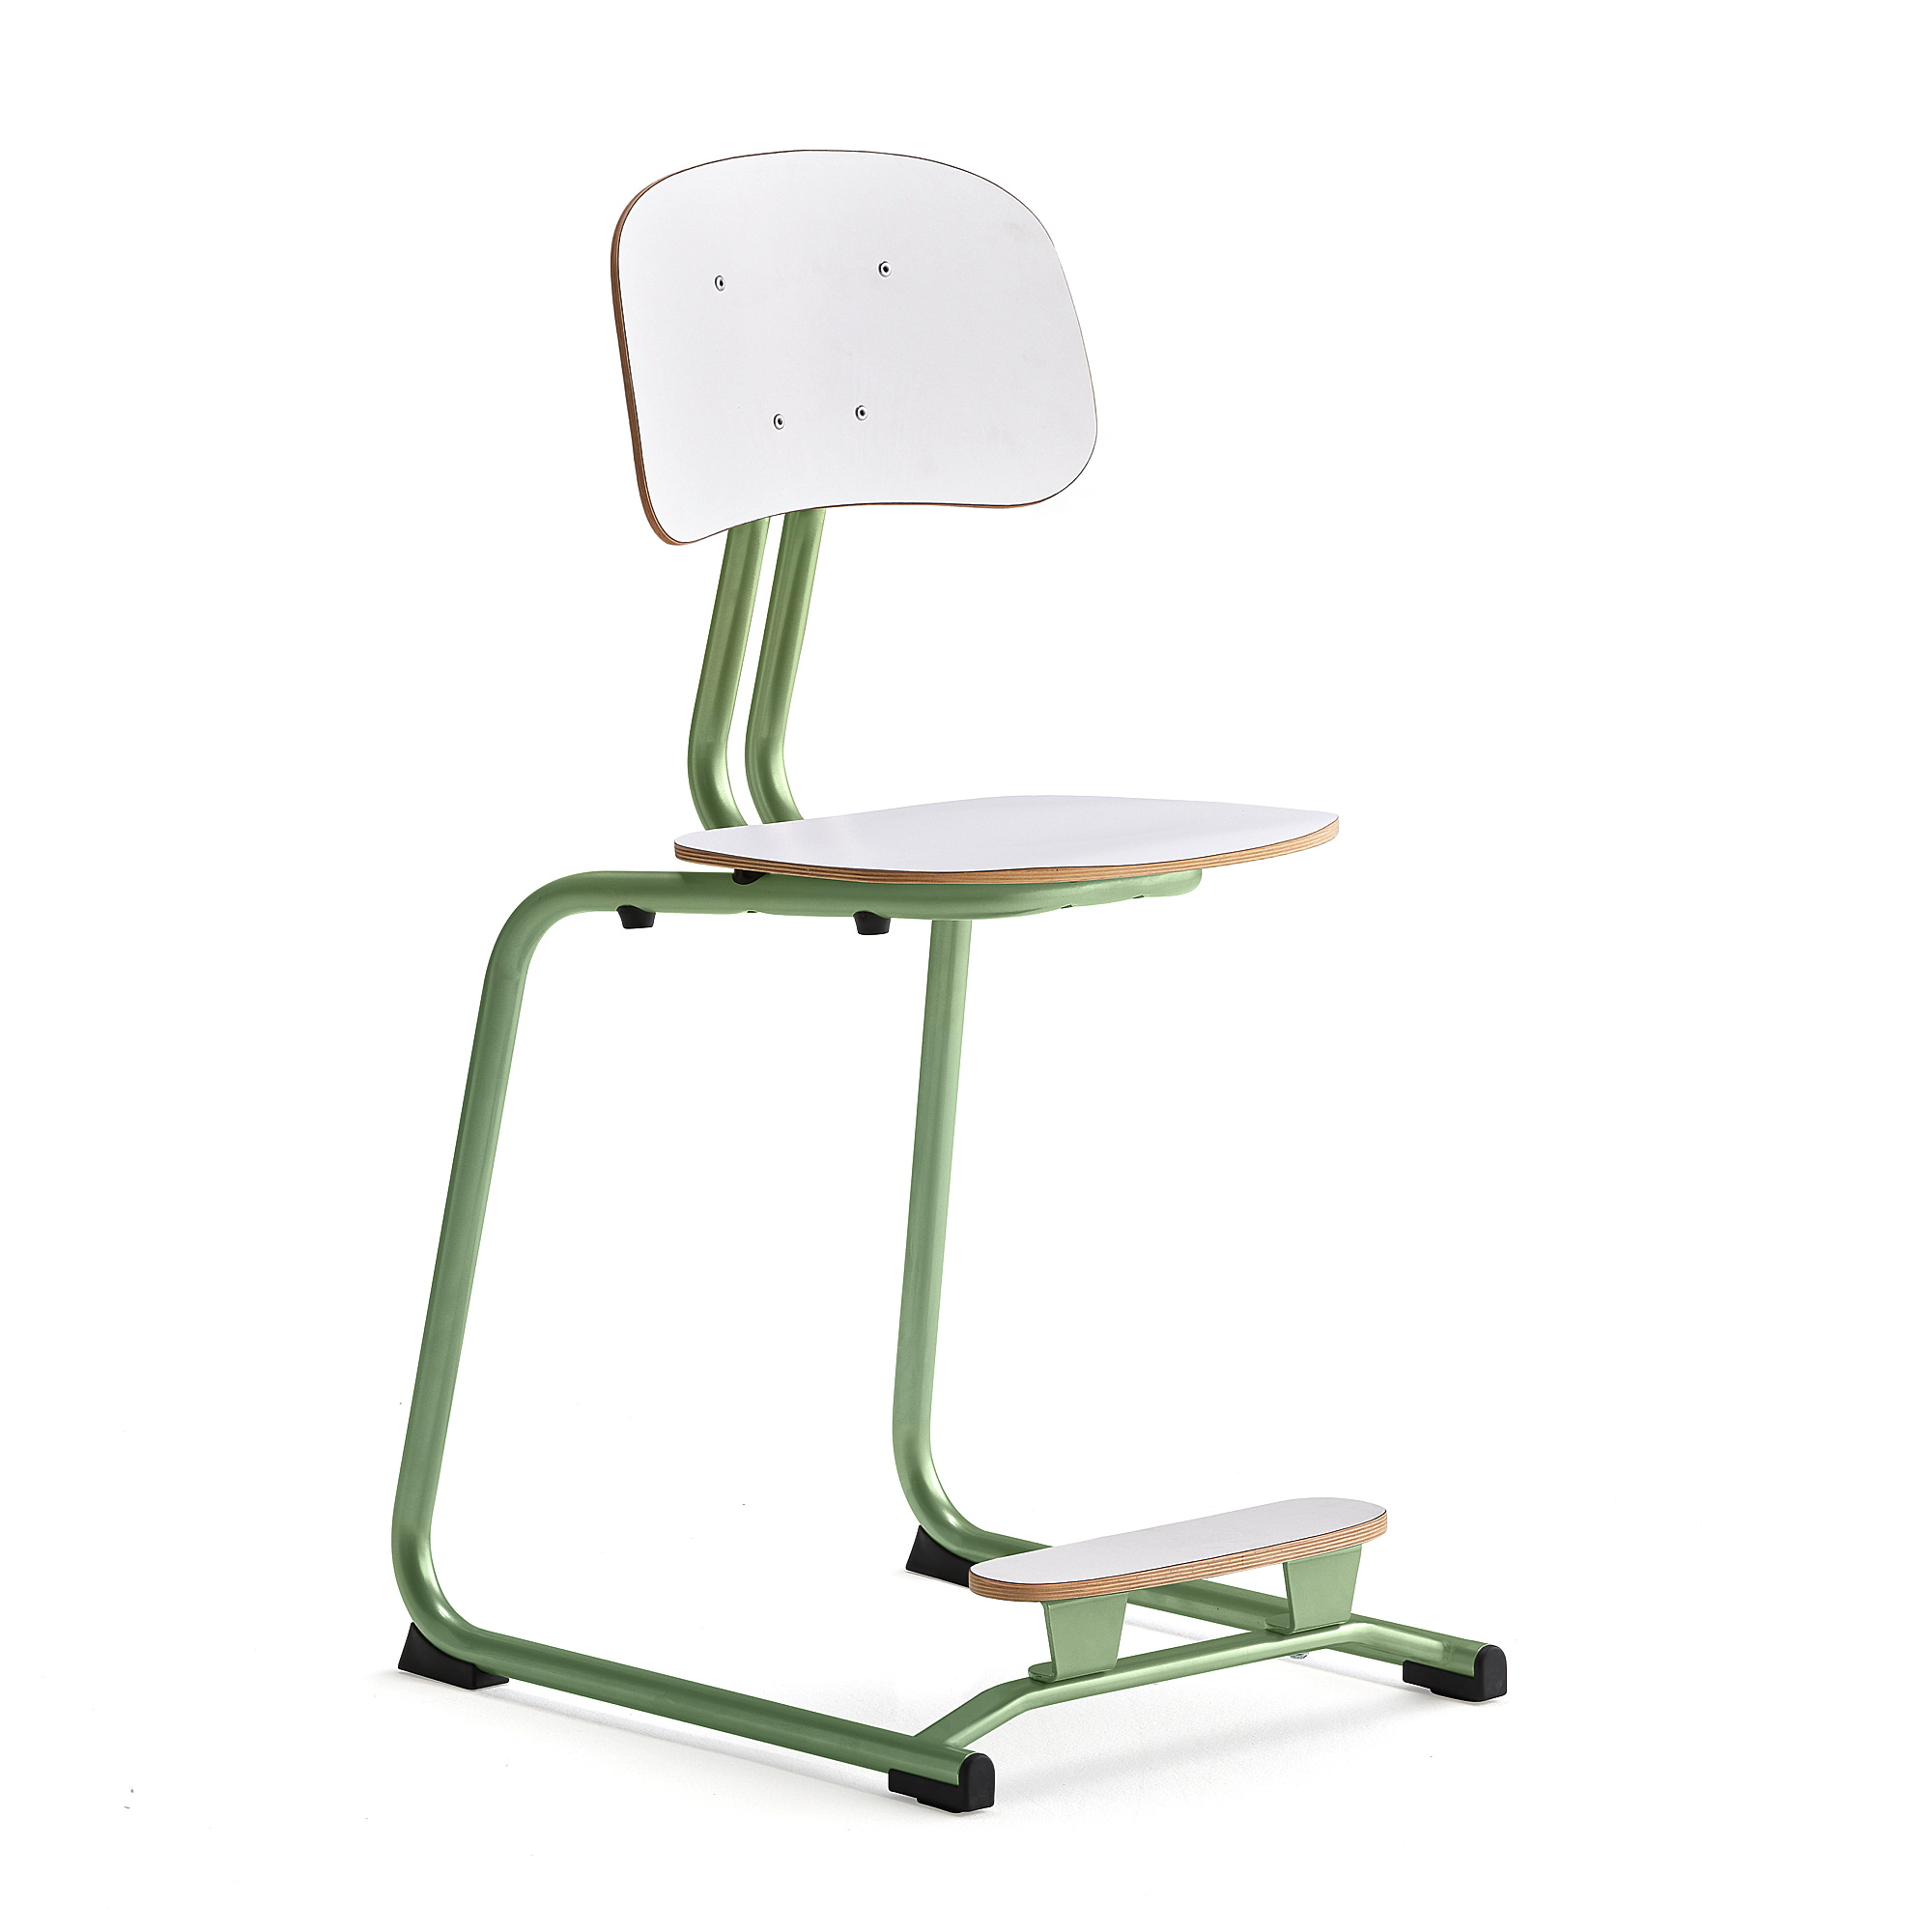 Školní židle YNGVE, ližinová podnož, výška 500 mm, zelená/bílá